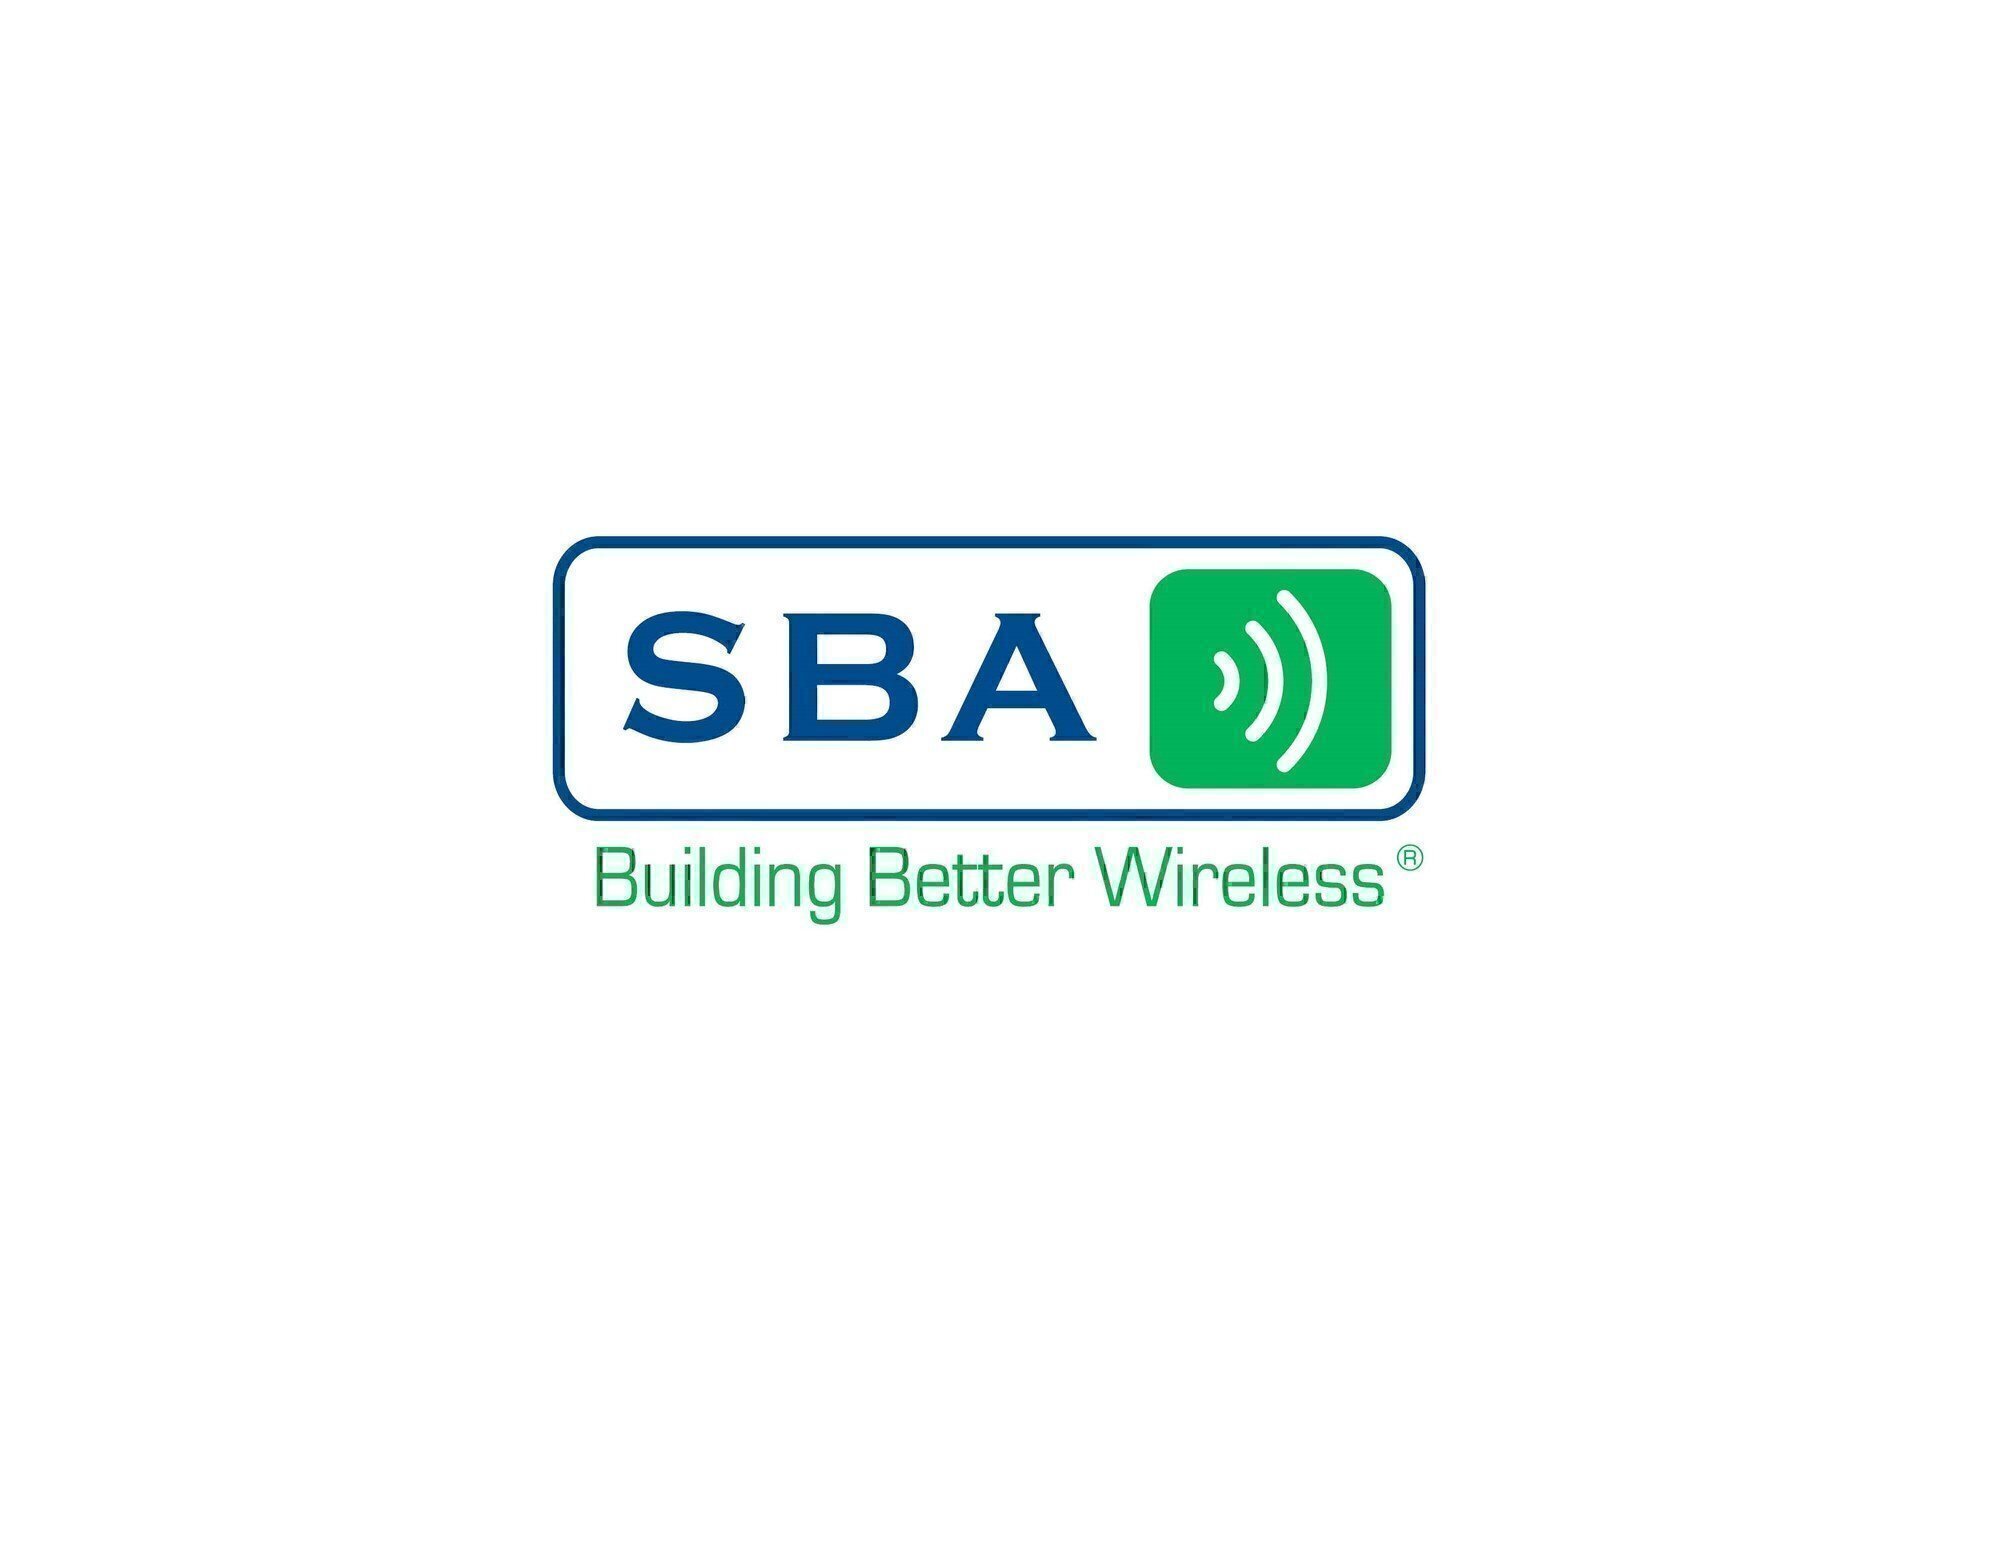 SBA Communications hot jobs for veterans